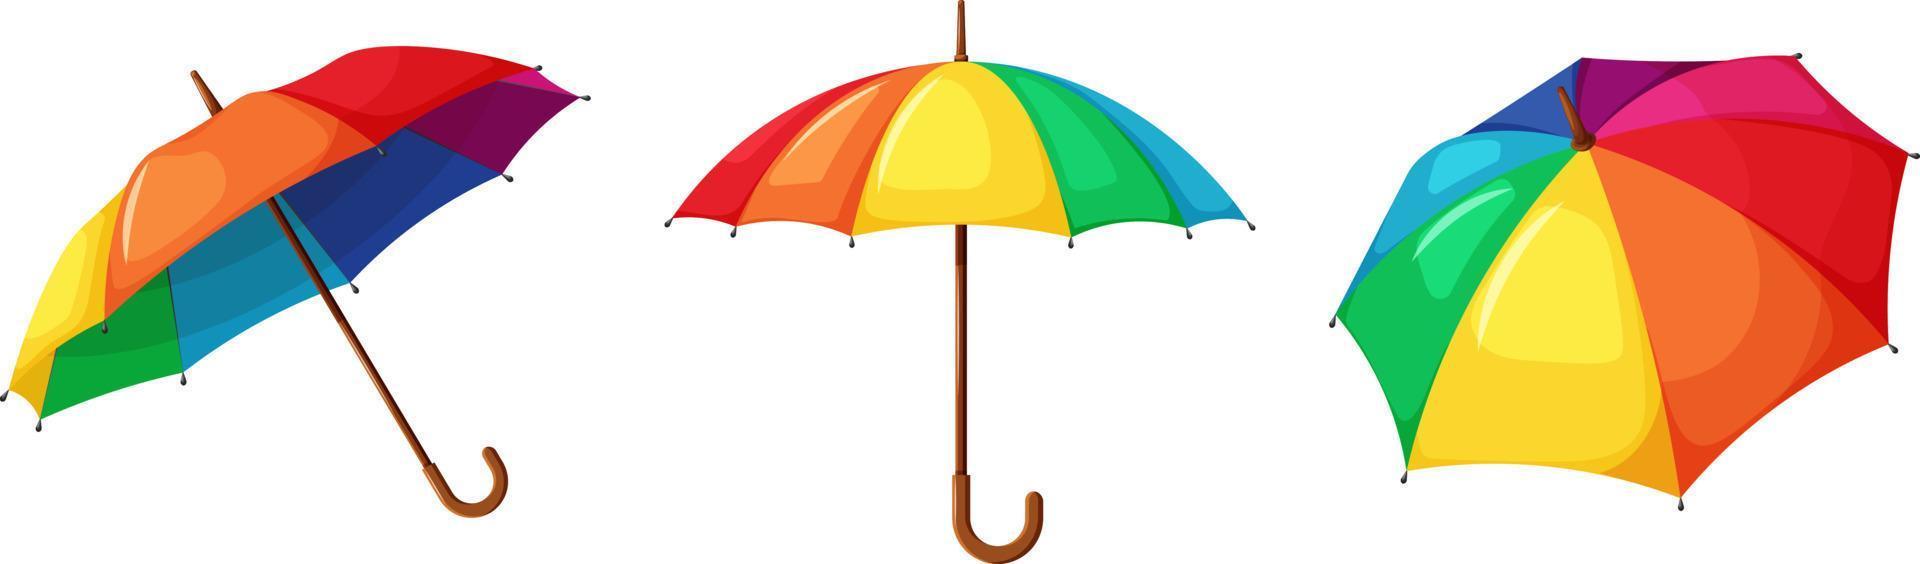 guarda-chuva de arco-íris brilhante em estilo cartoon vetor